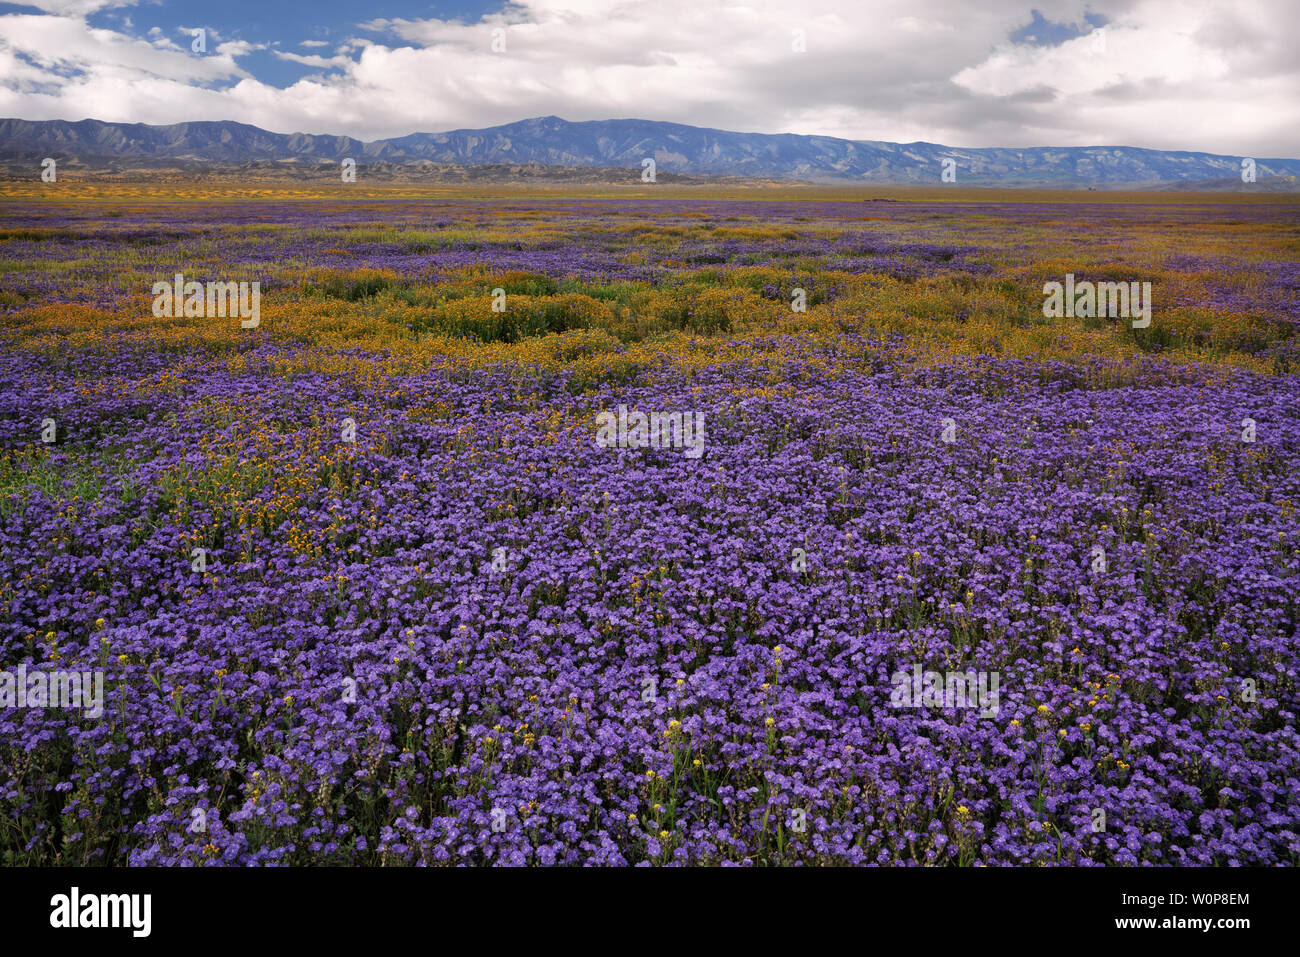 Tapis de marguerites à flanc de la Californie Carrizo Plain National Monument au cours du printemps de 2019 Super Bloom. Banque D'Images